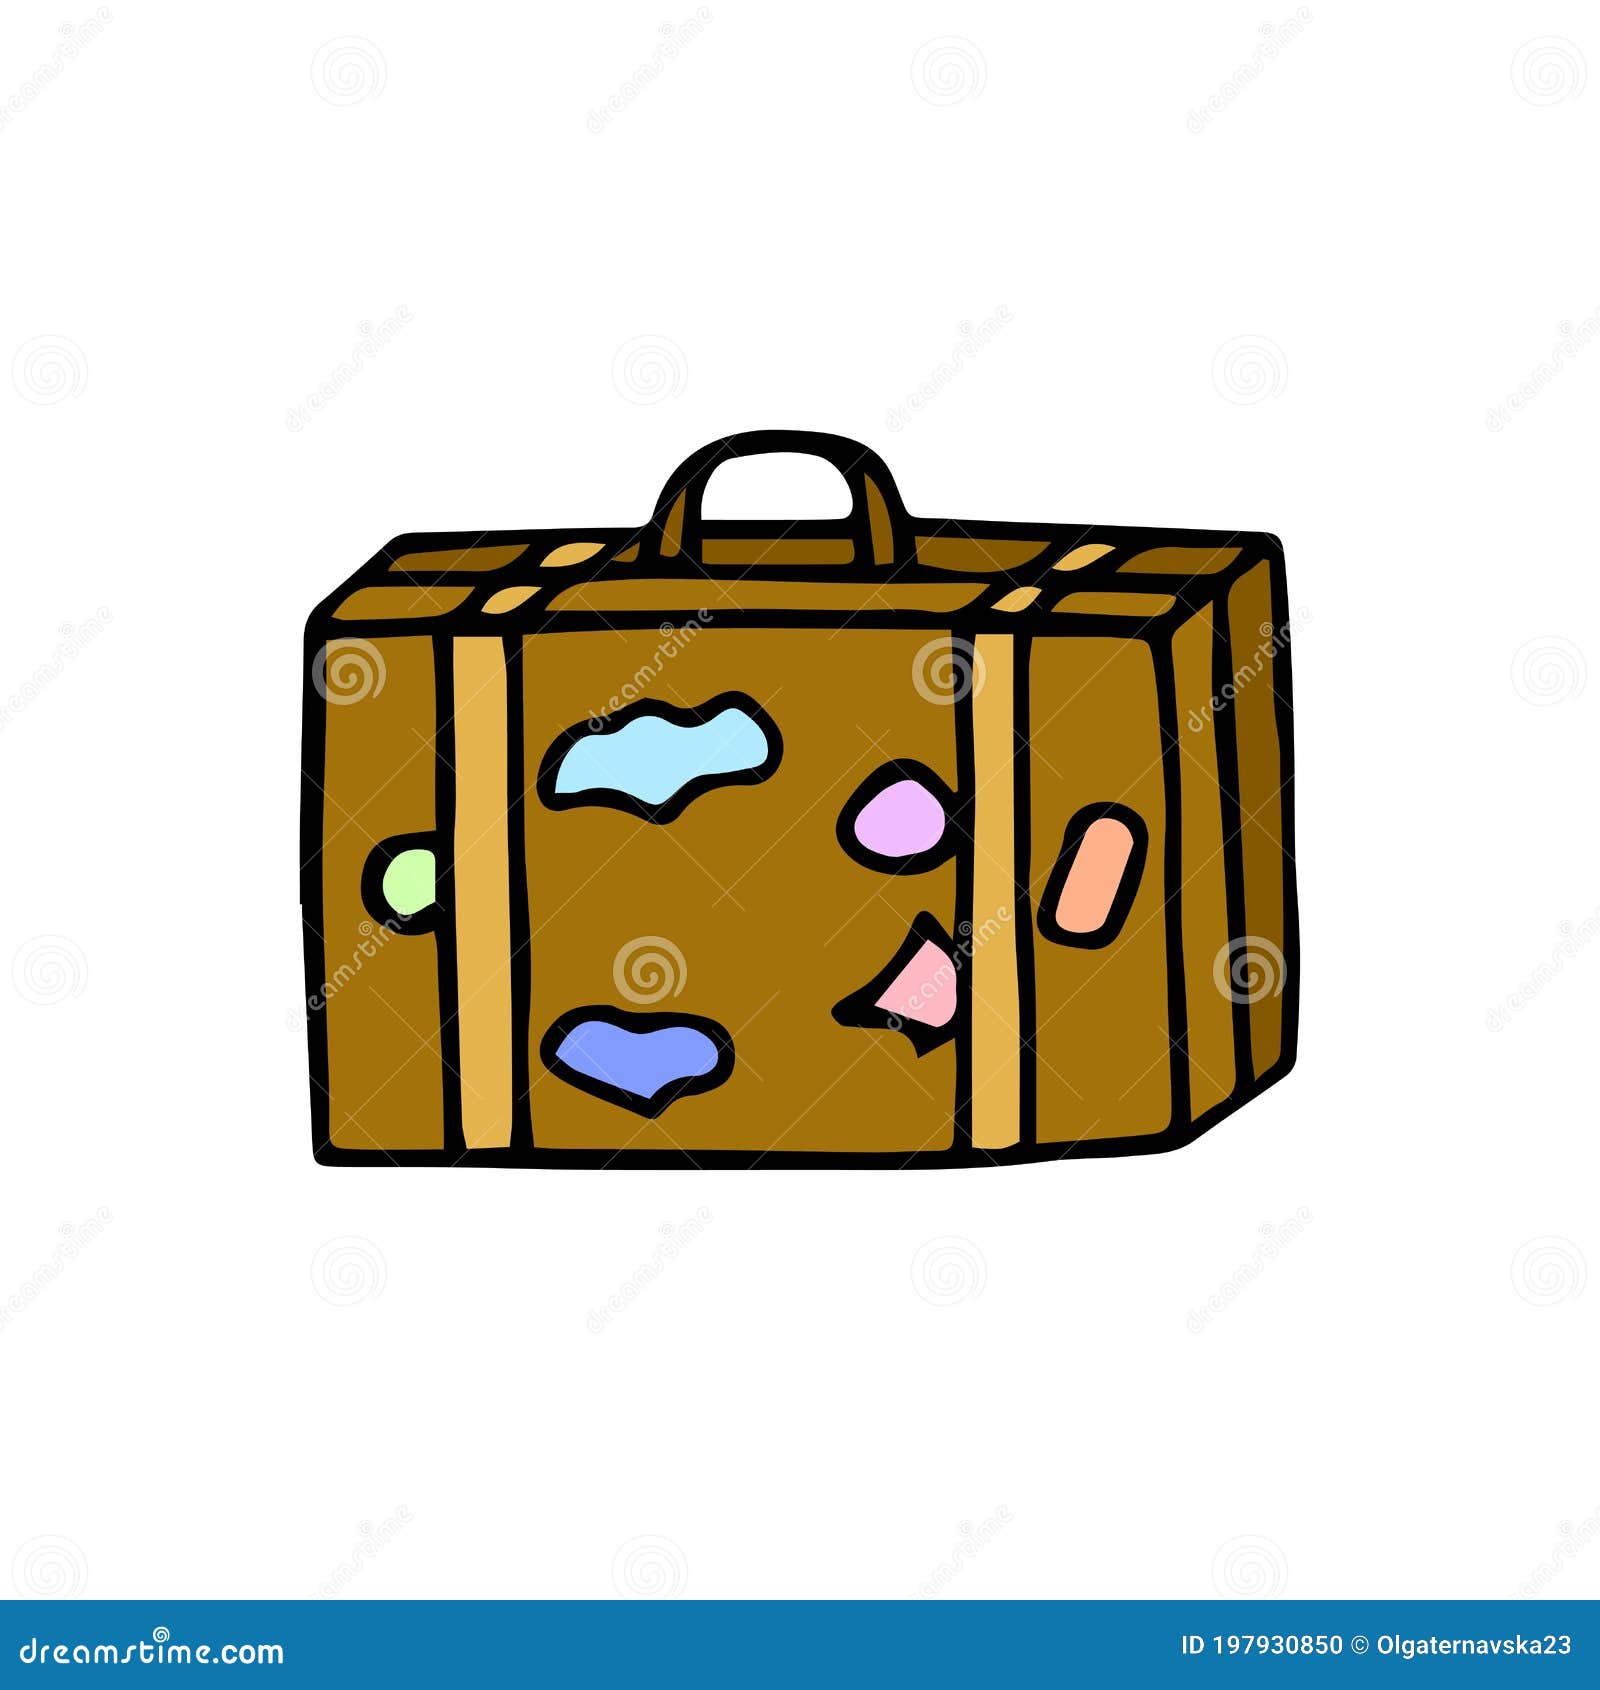 Ilustración de maleta de viaje aislado en blanco